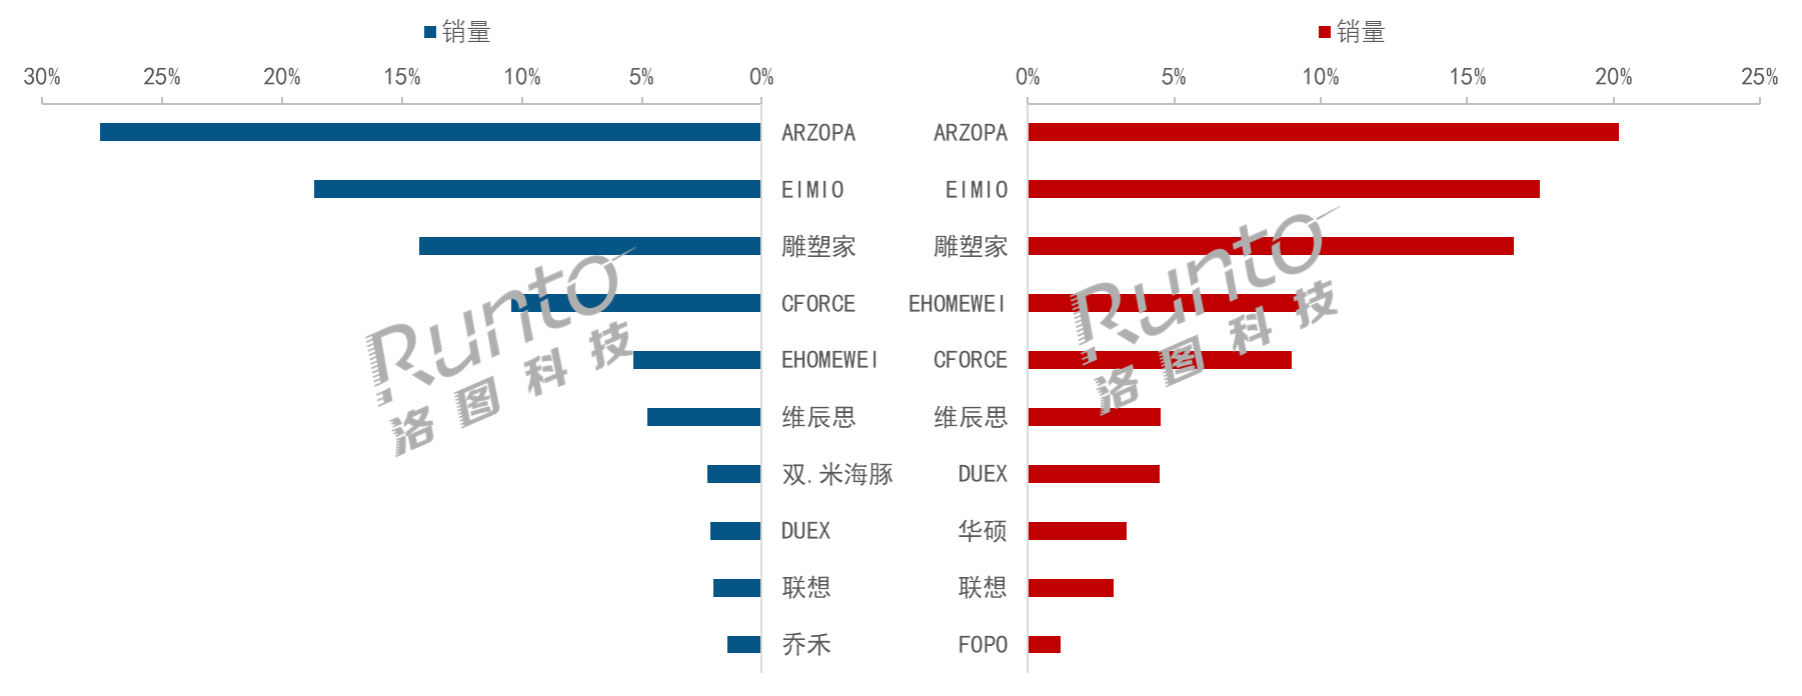 中国便携式显示器市场分析及全年规模预测